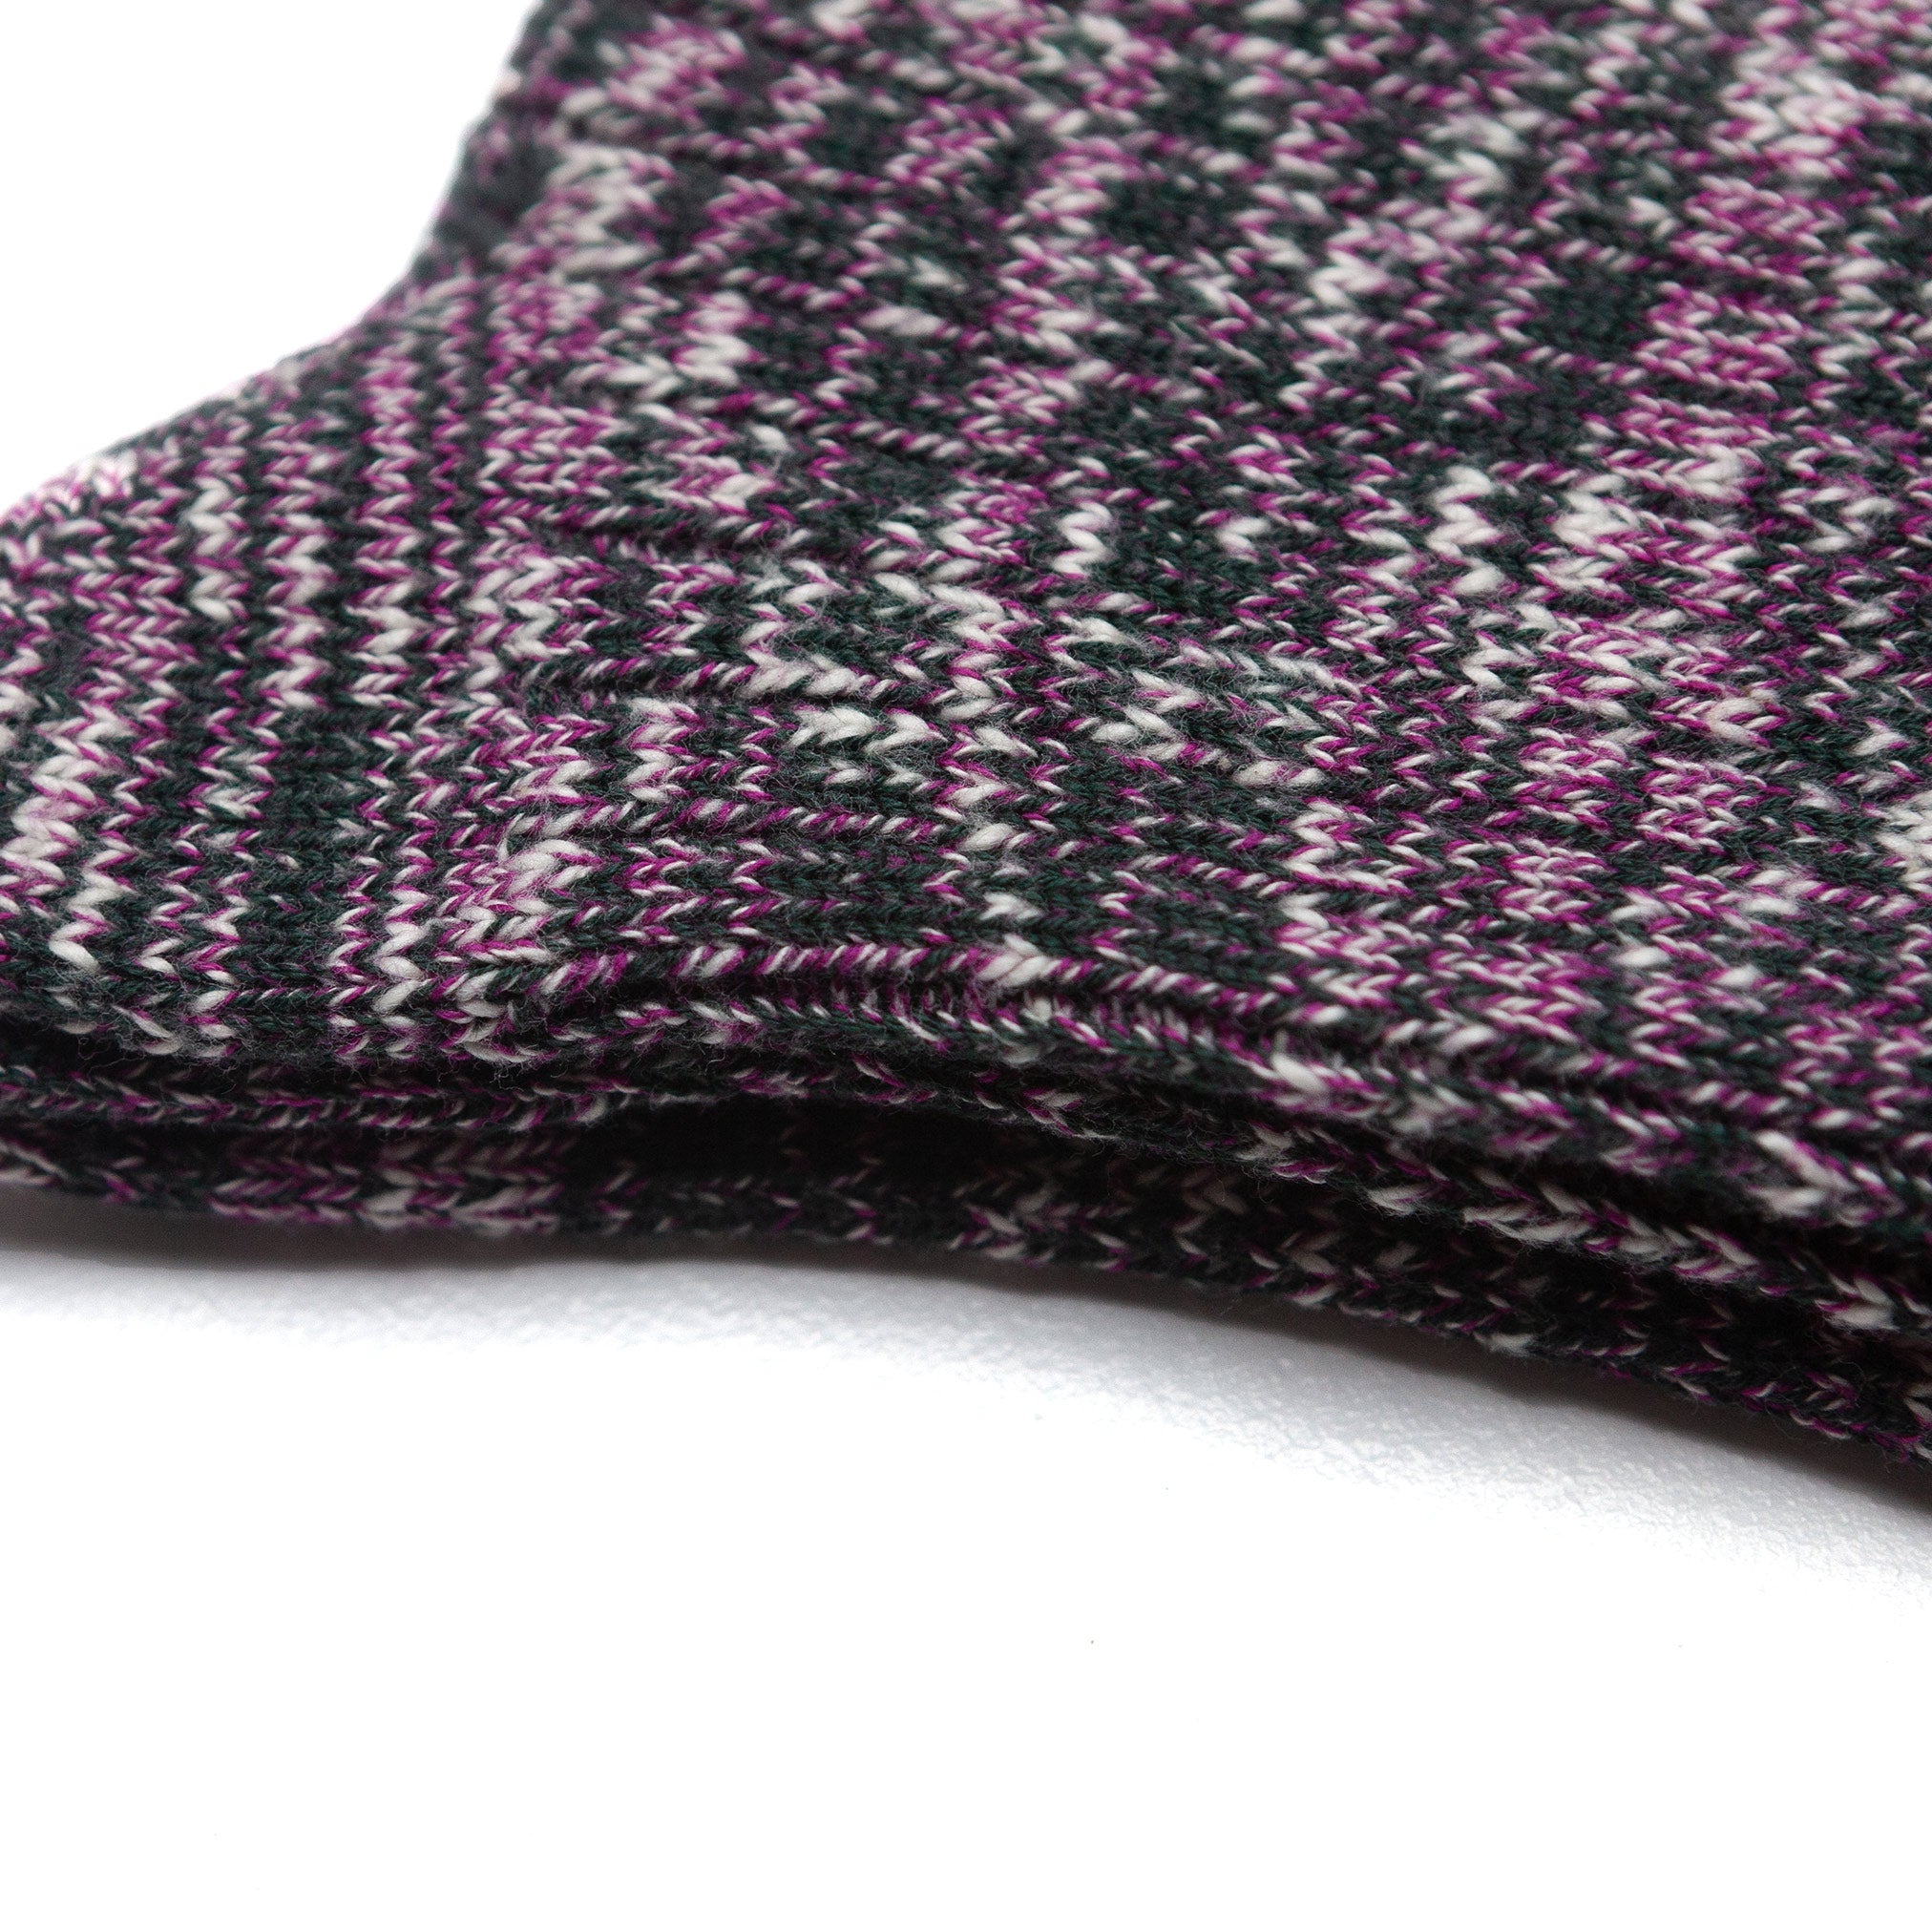 Firenze Sock in Marled Purple